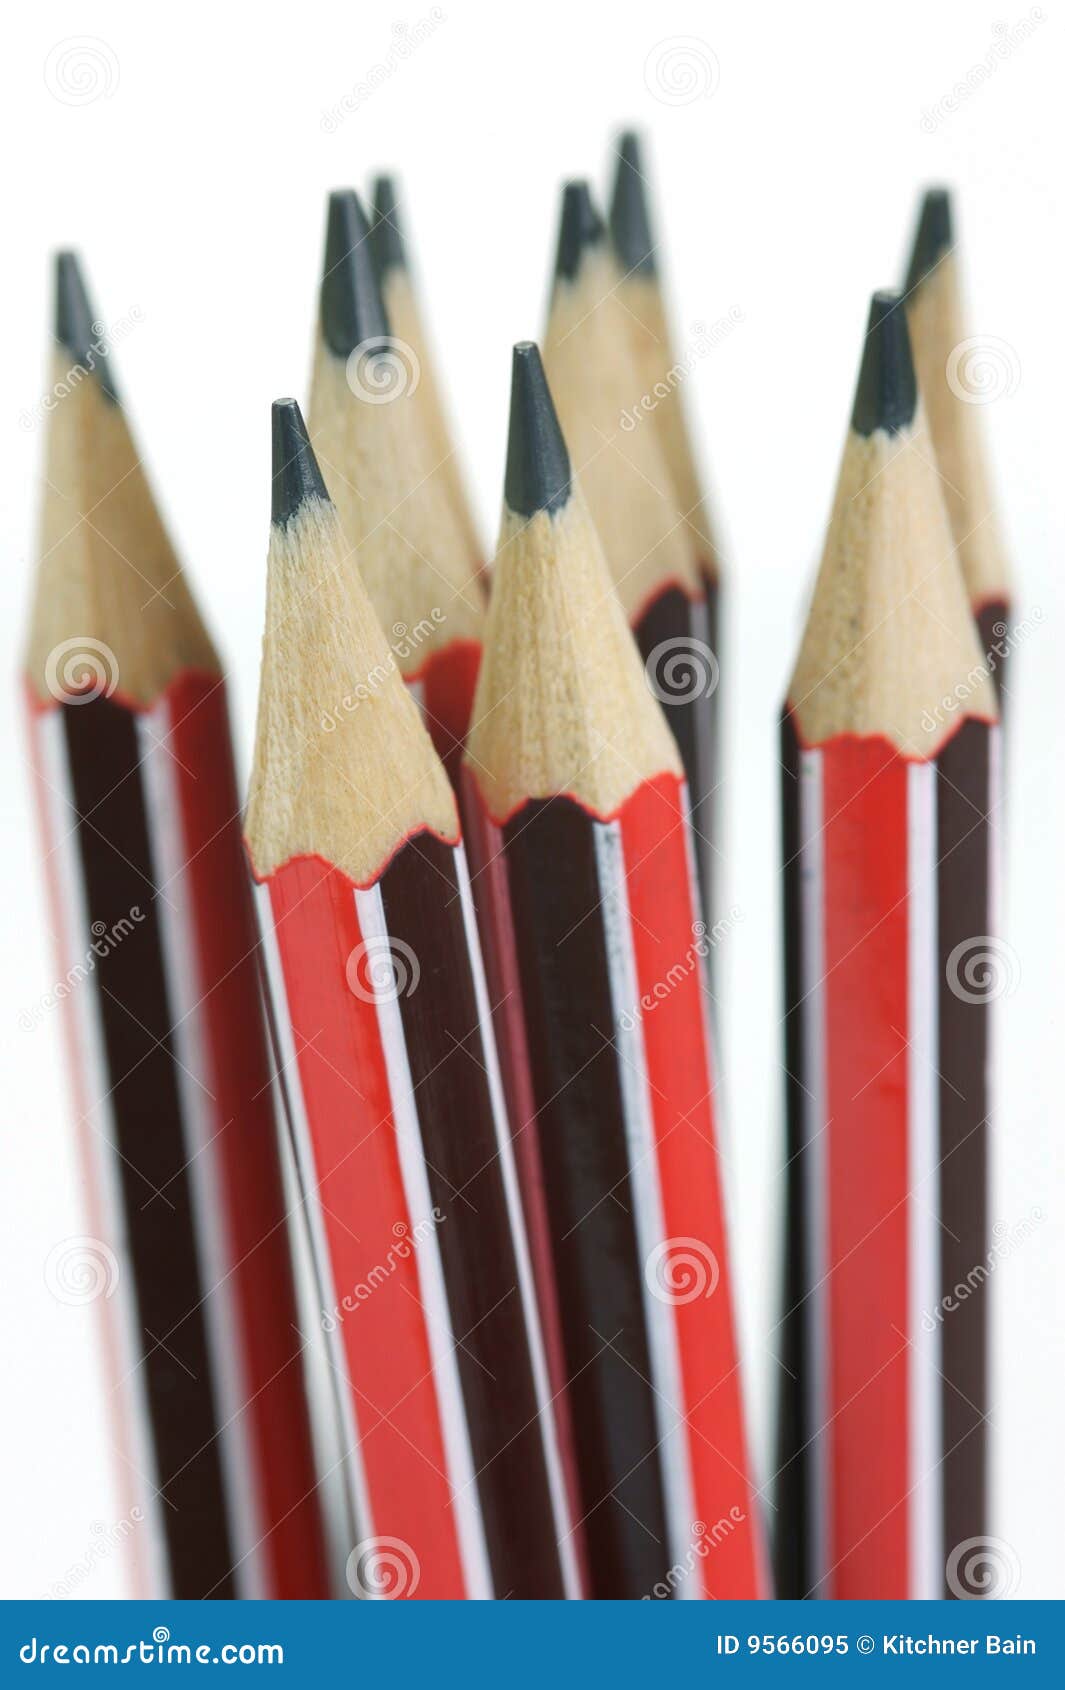 Pencil pics